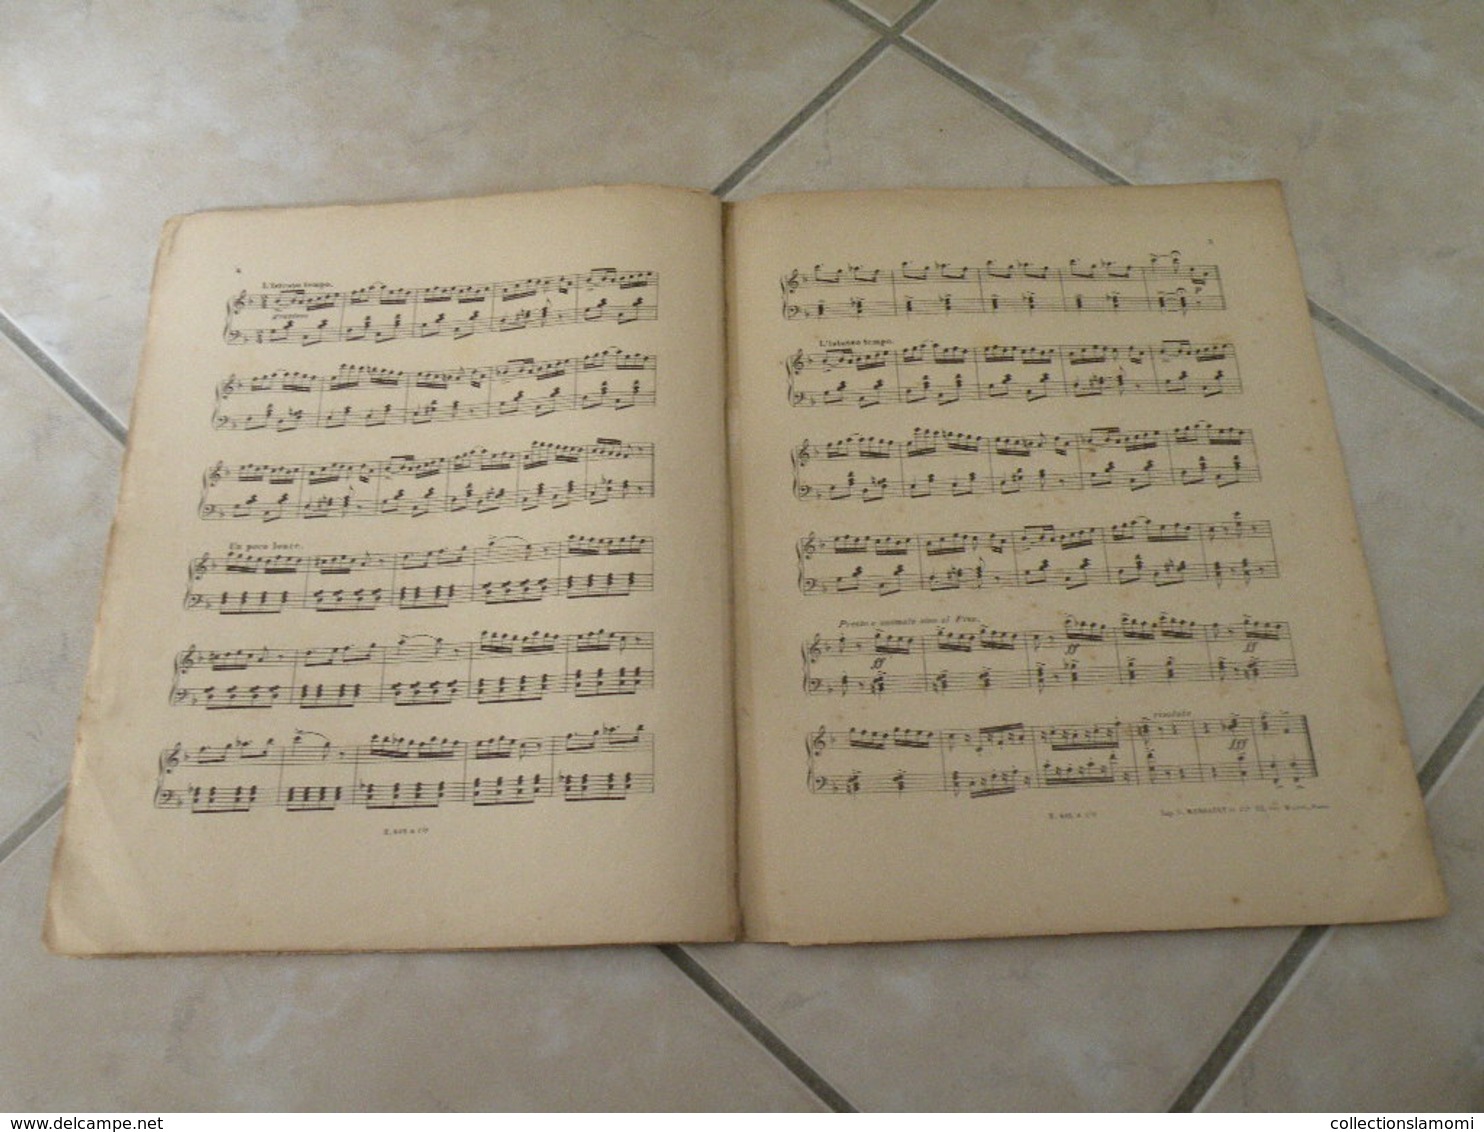 A La Cueillette -(Musique Marius Carman) - Partition (Piano)1900 - Klavierinstrumenten